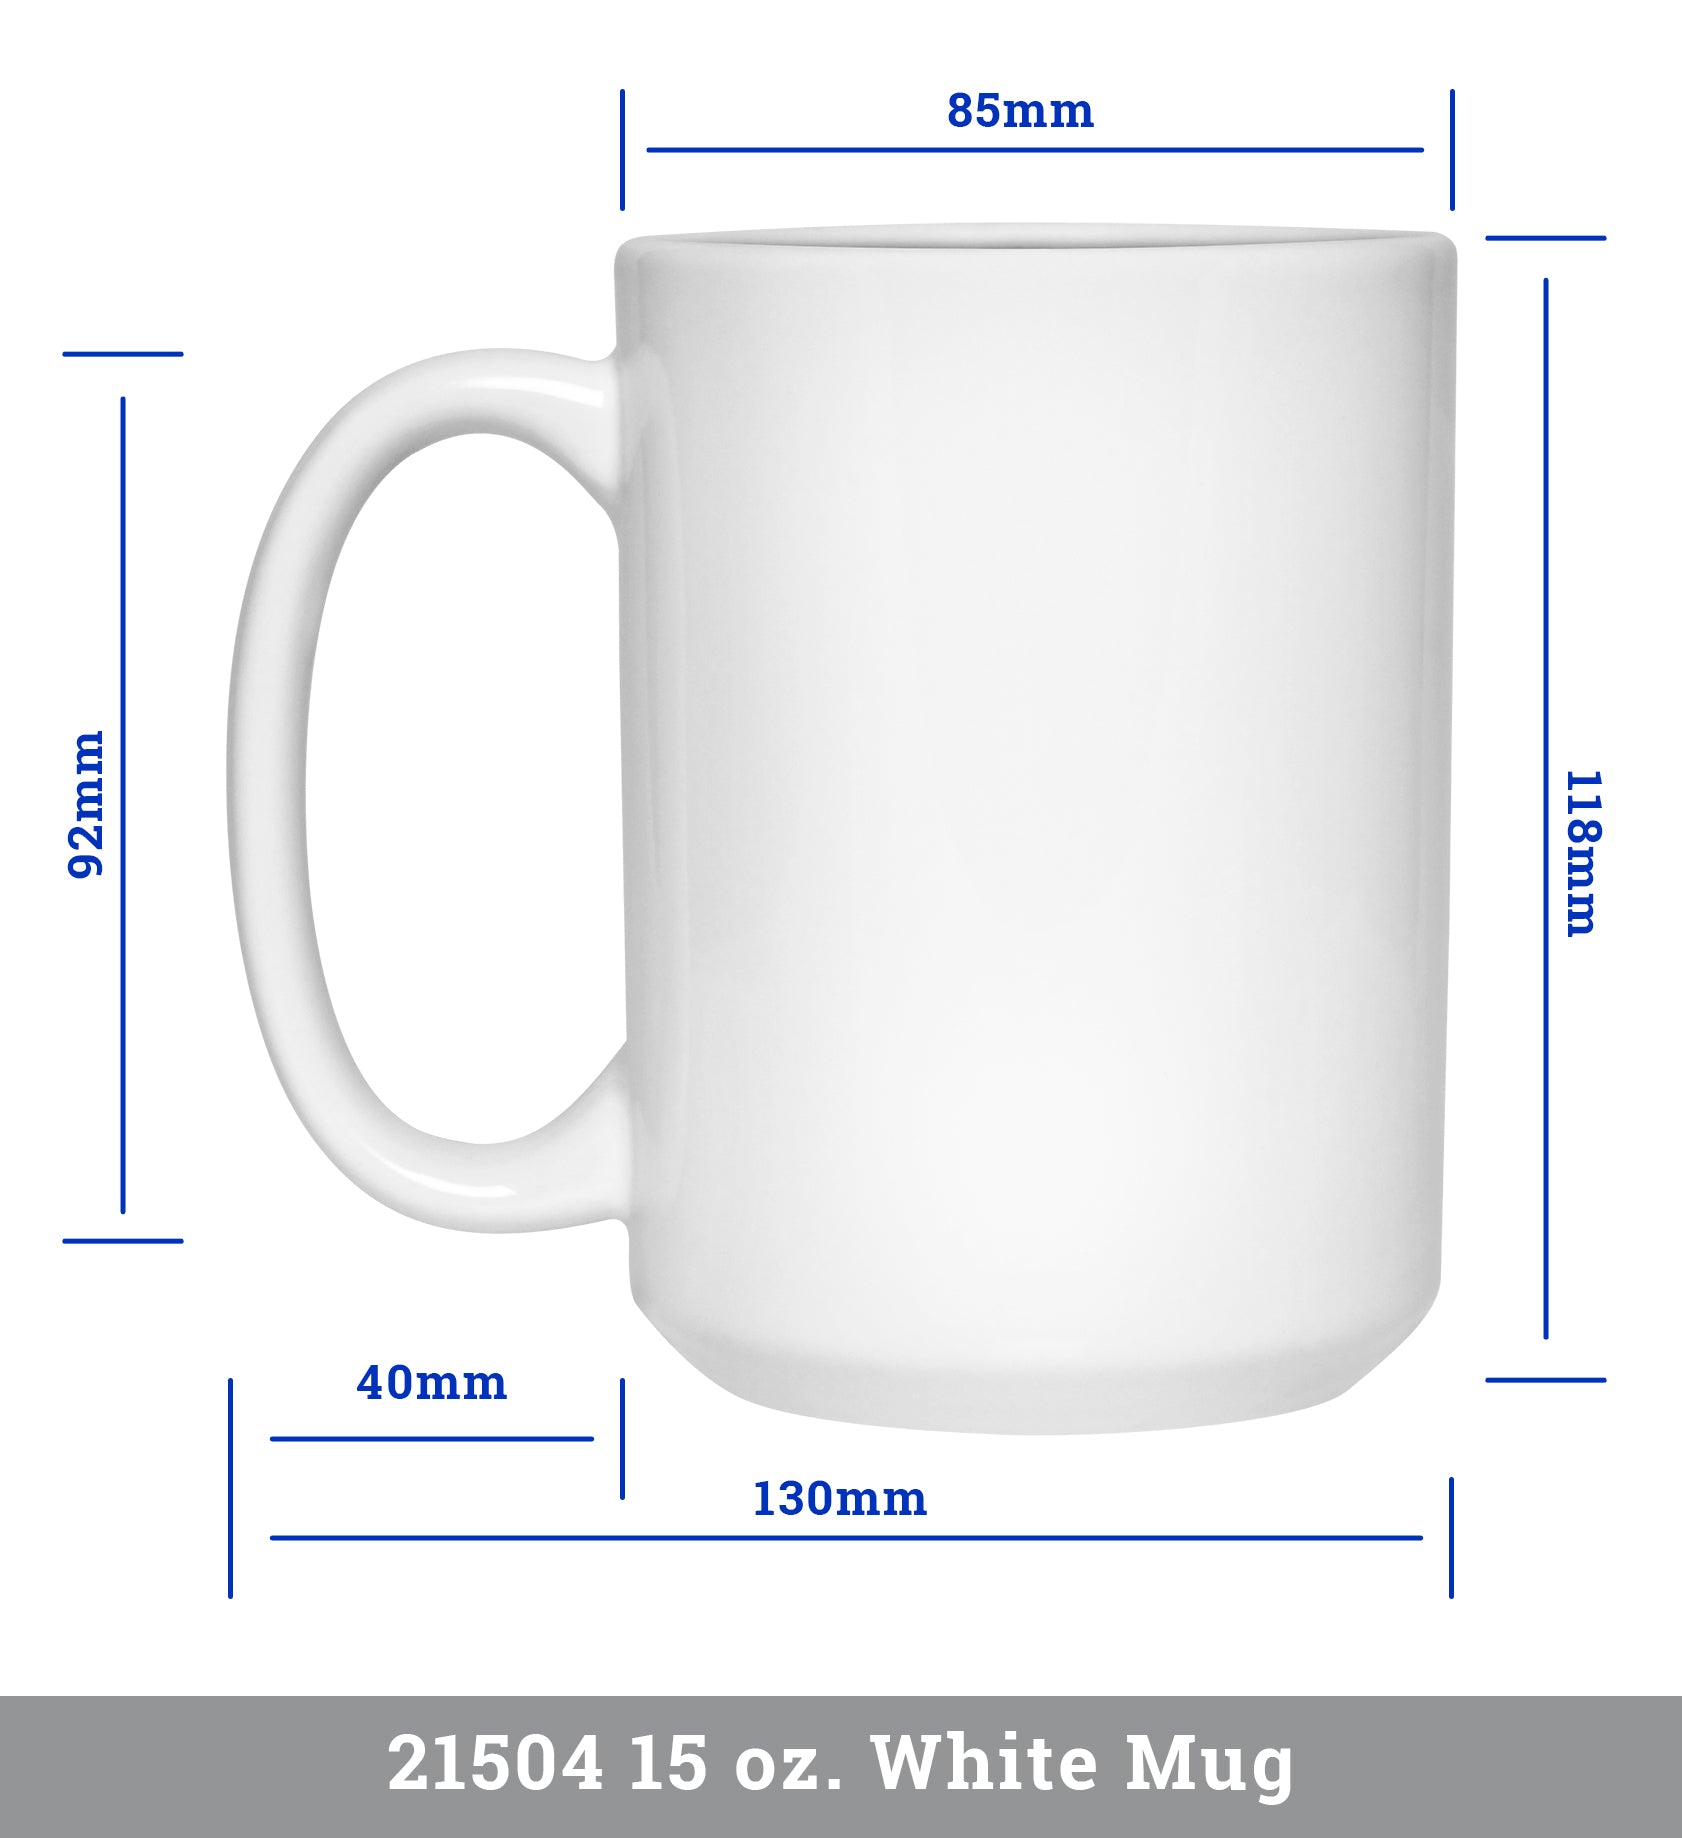 Personalized Blessed Mema Mug, Mother's Day Coffee Mug, New Mom Mug Gi